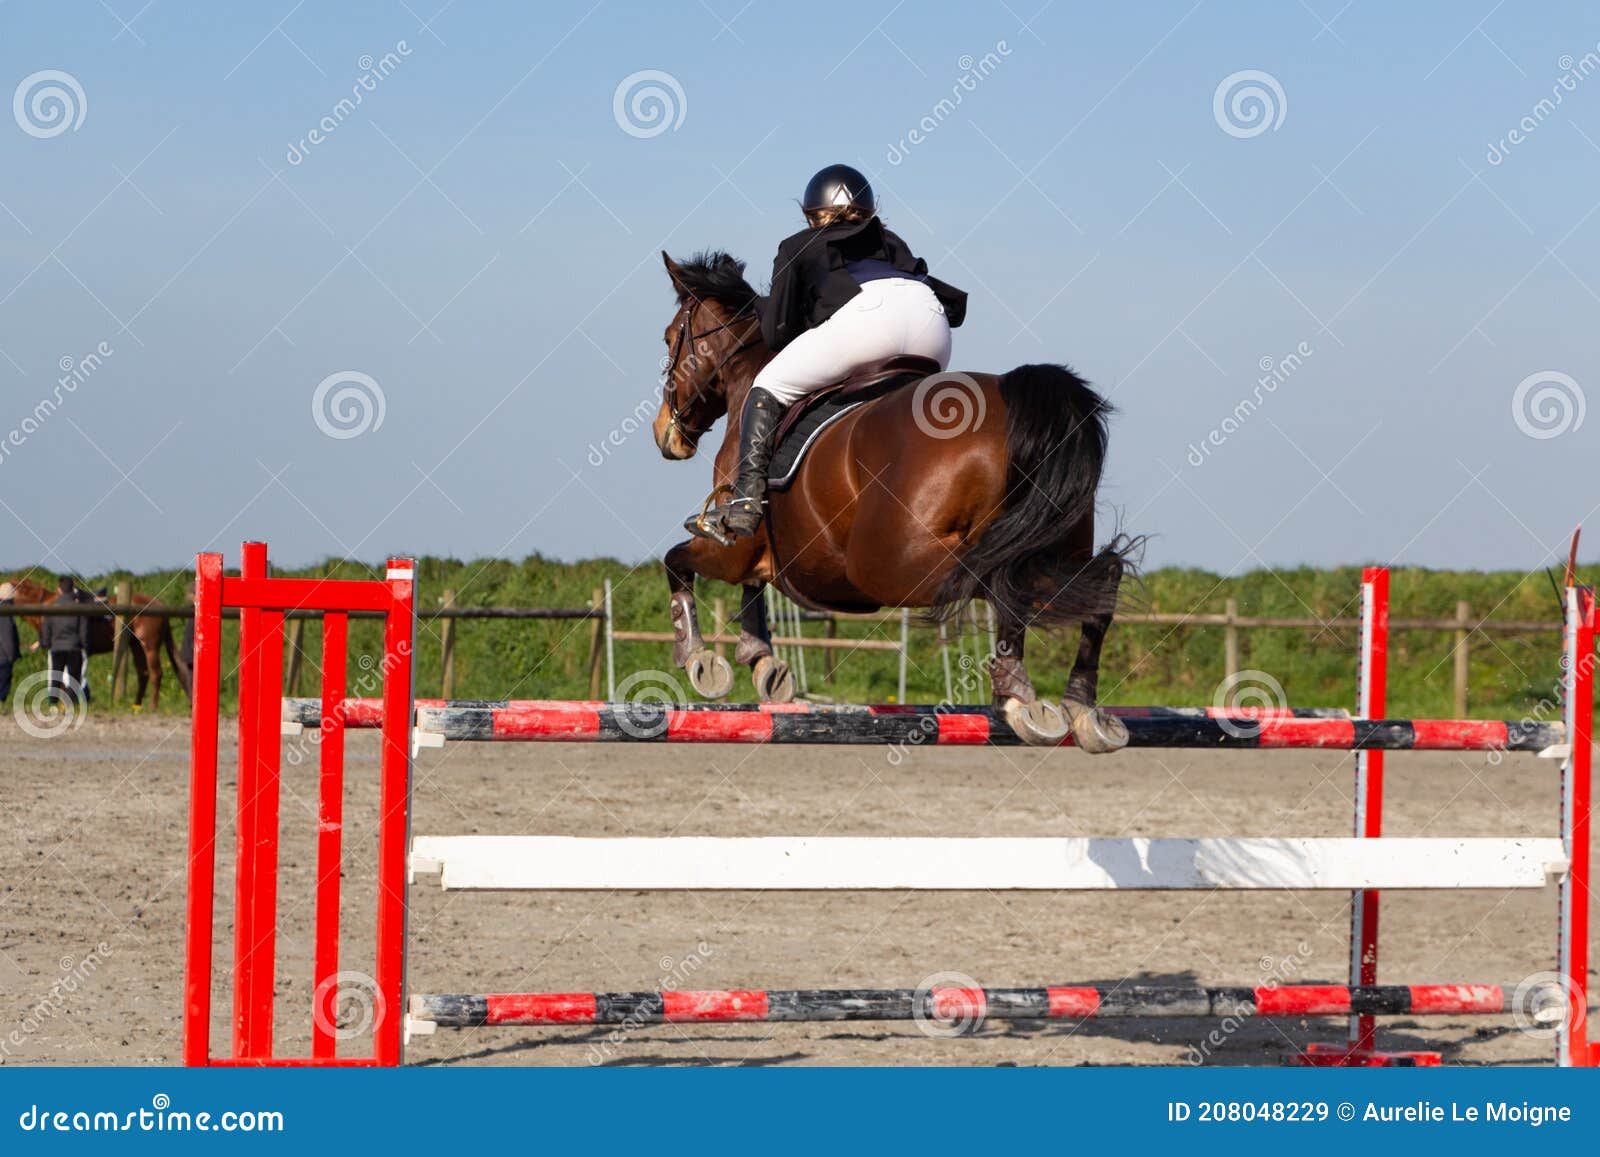 Jovem cavaleiro montando um cavalo pulando uma cerca em uma